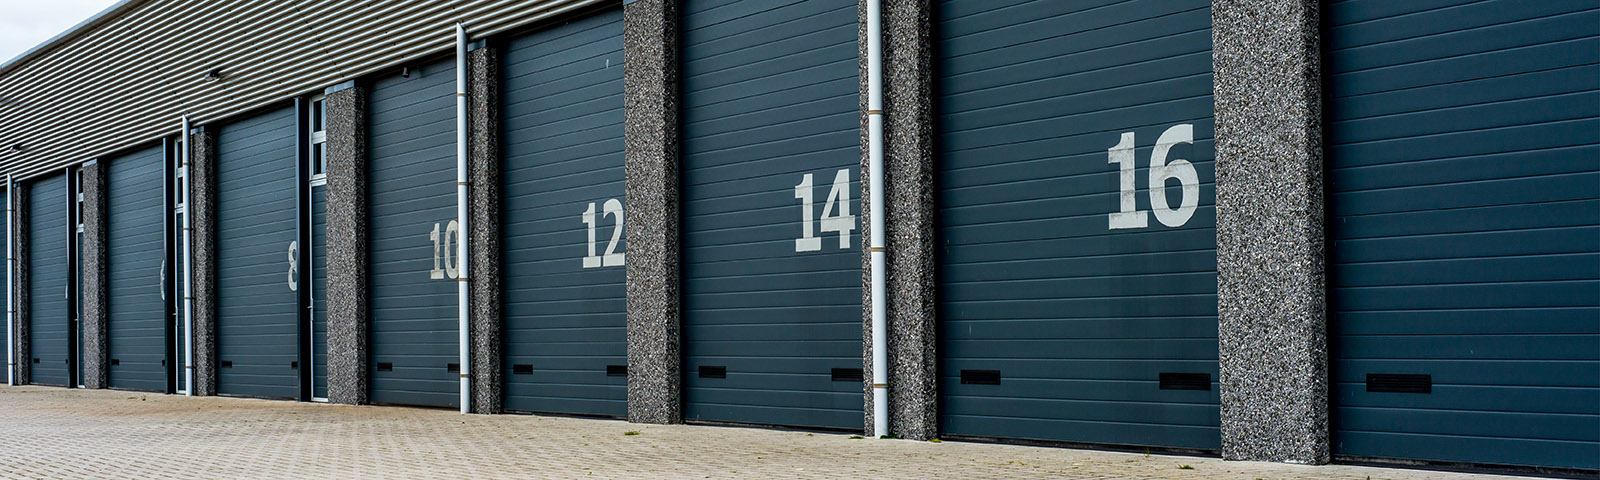 A row of storage garage doors